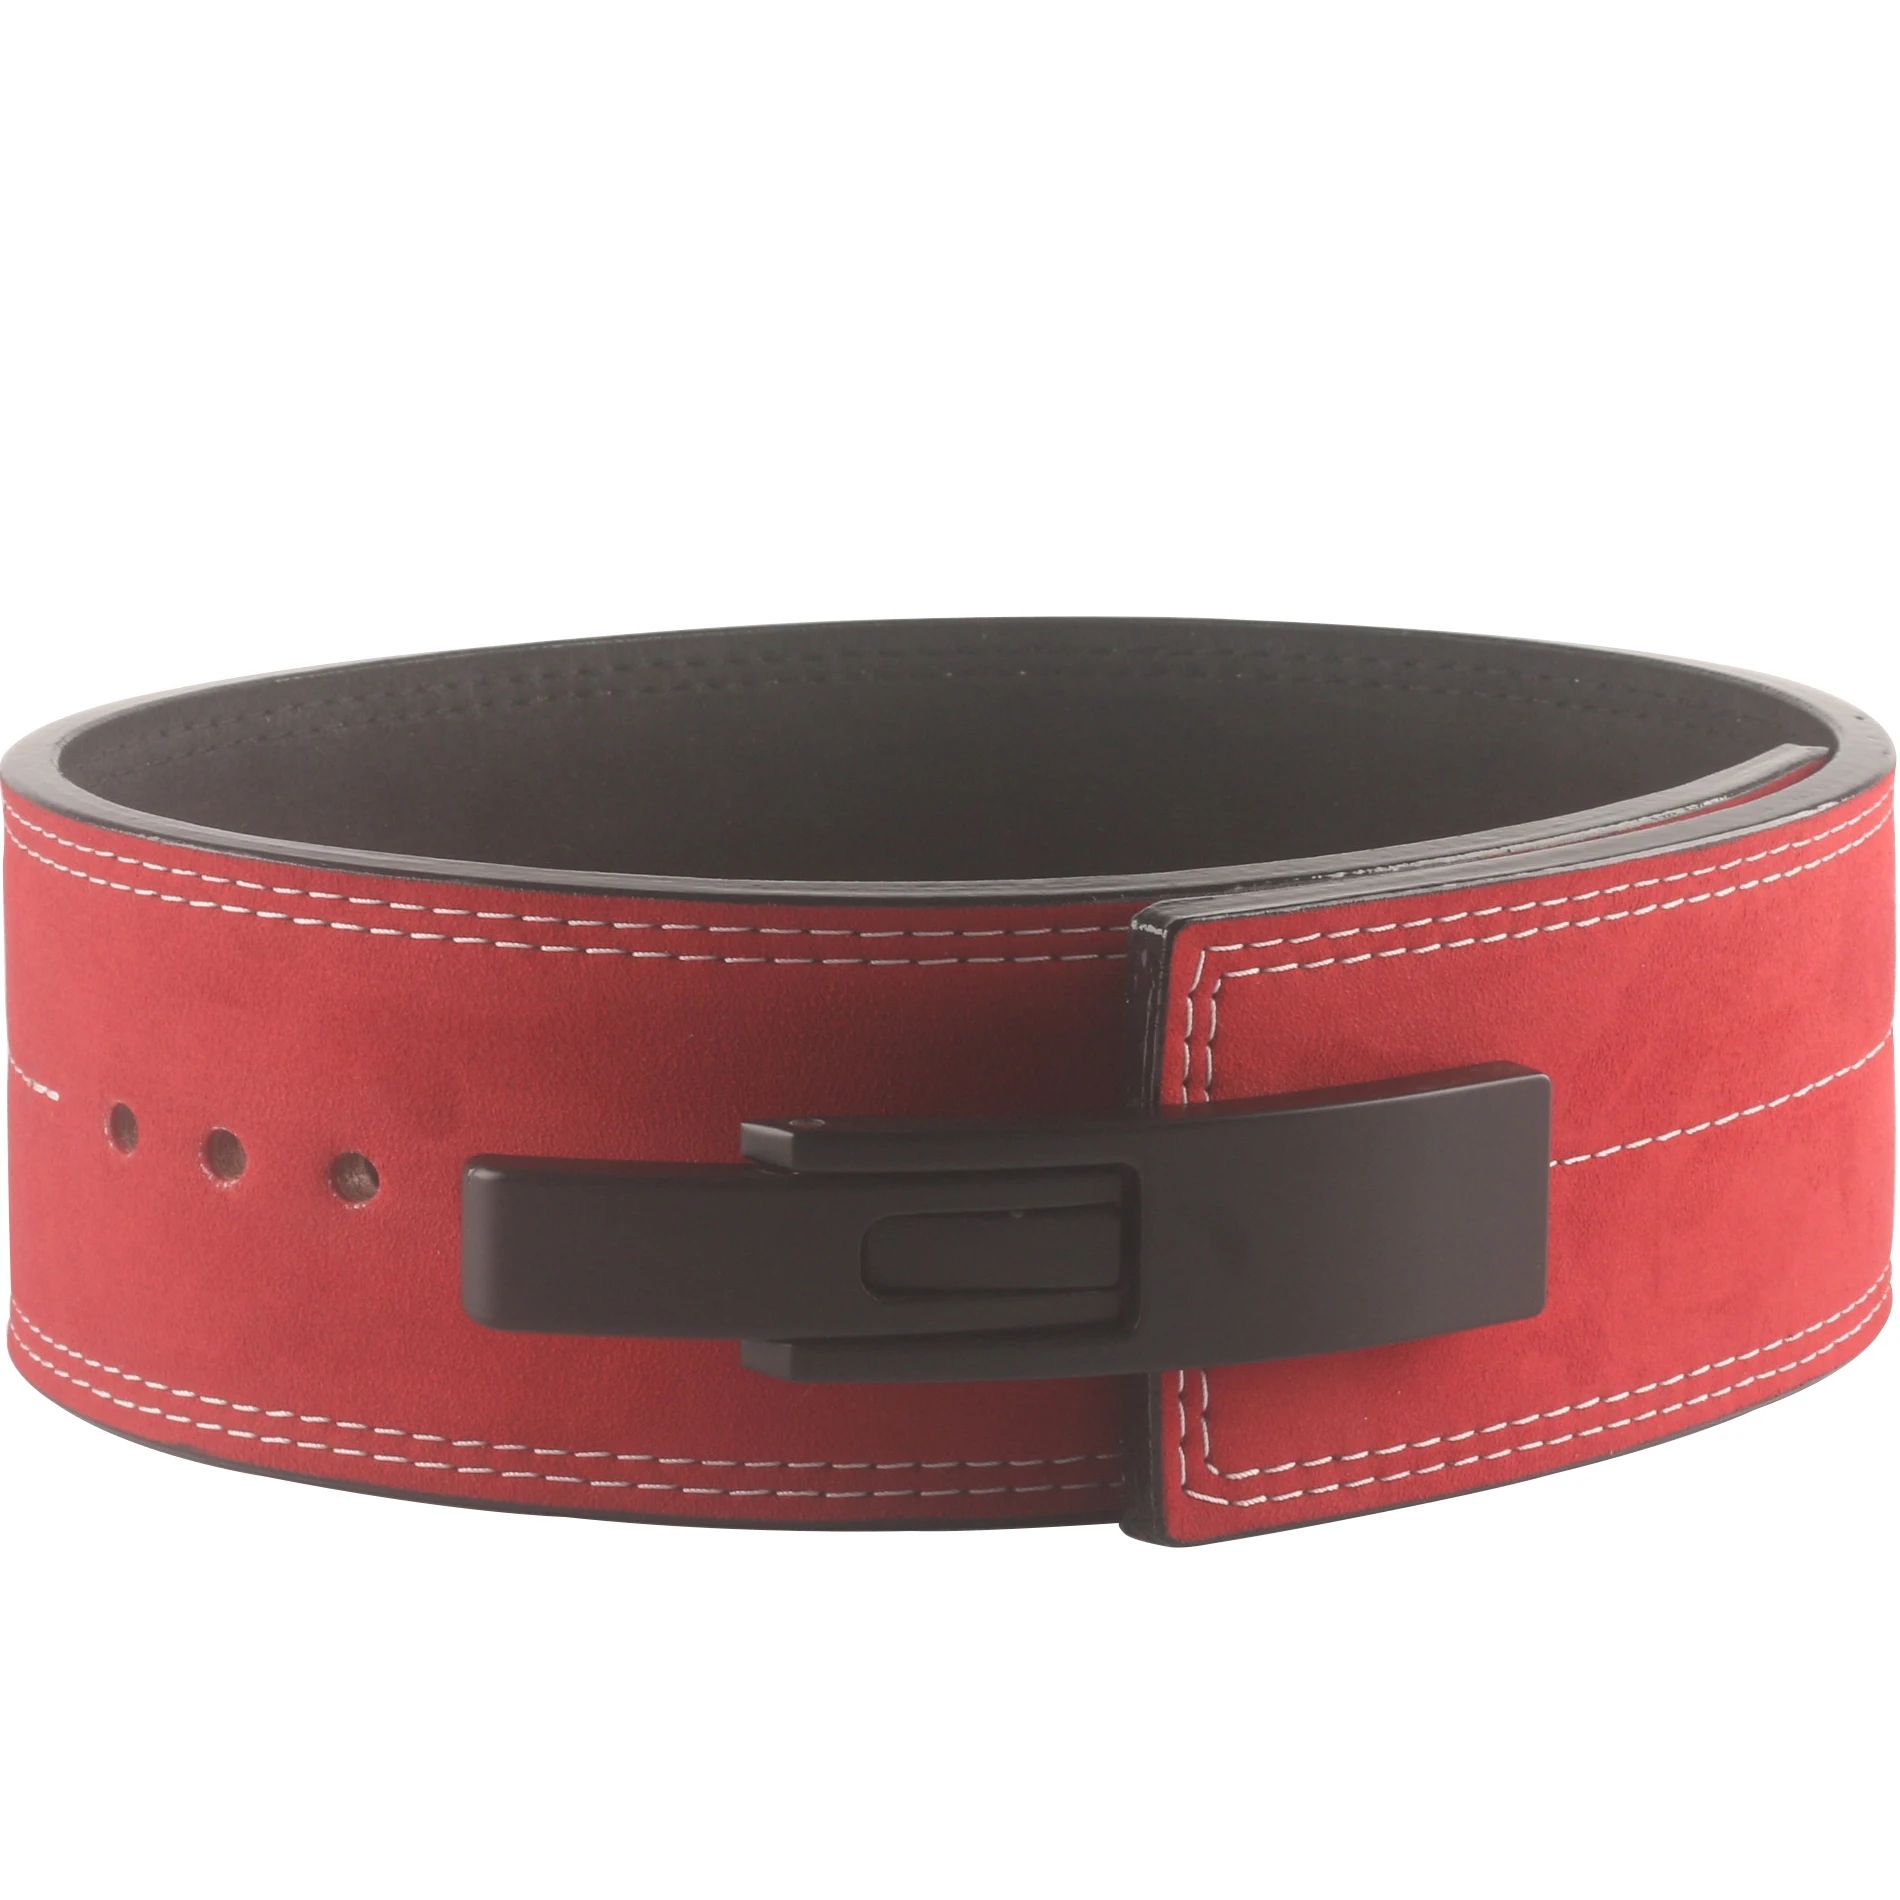 Color:RedSize:XL(waist 110-120cm)